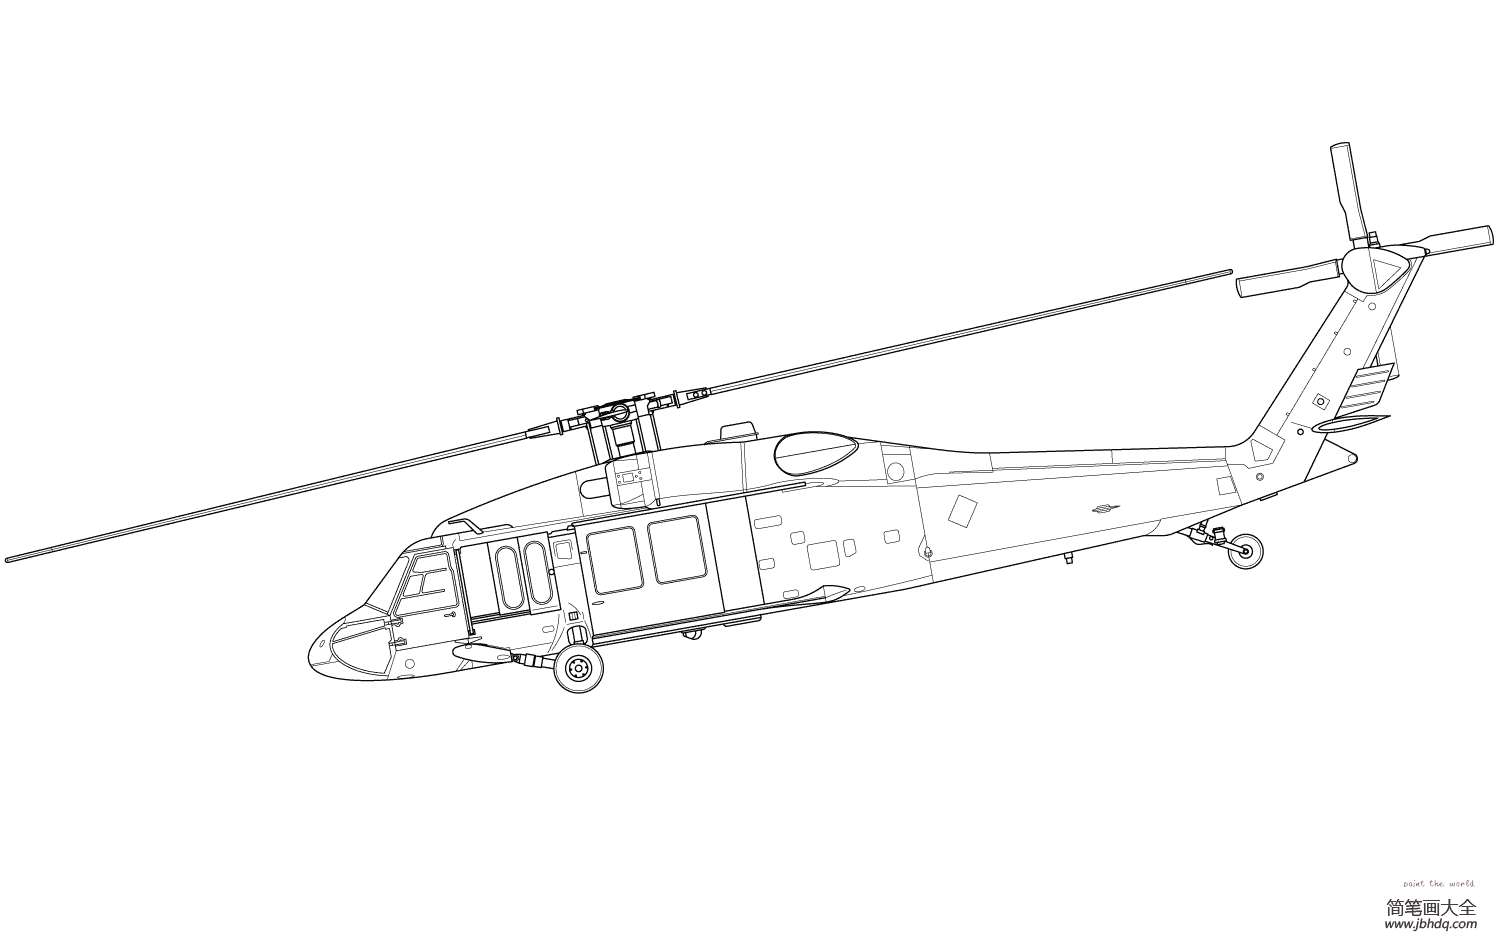 高级武装直升机画法图片